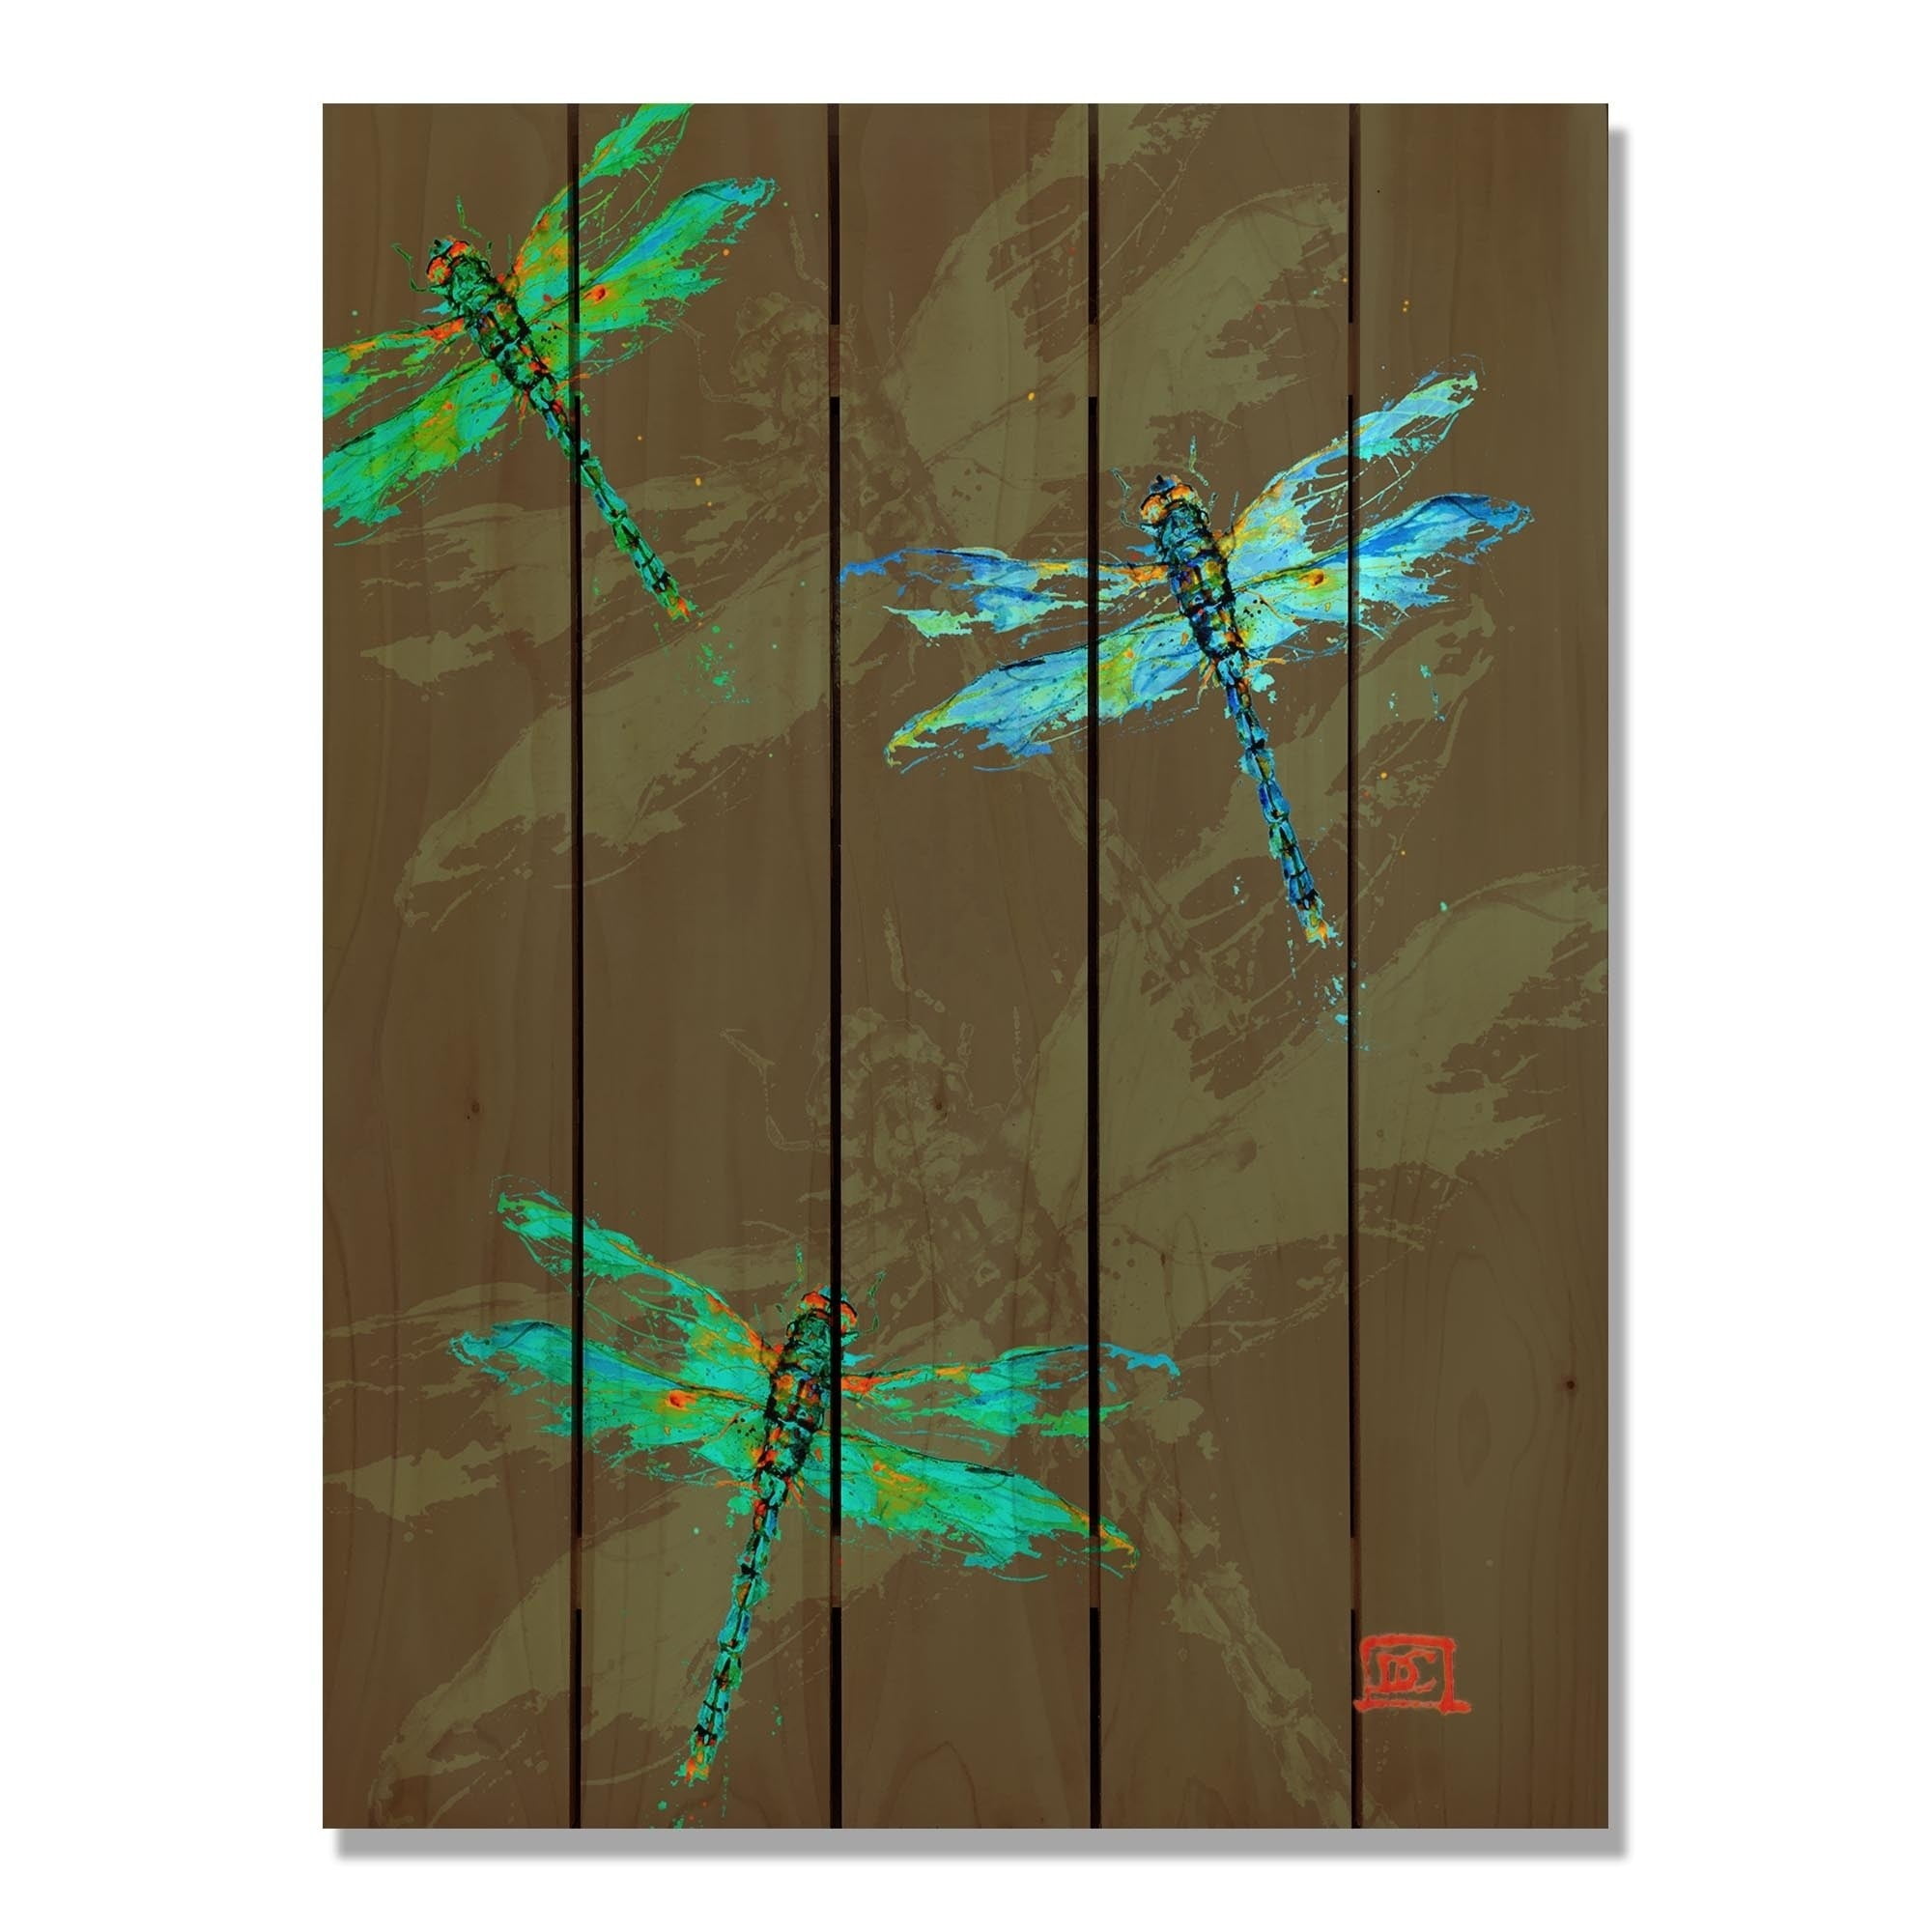 28 X 36 In. Crousers Neon Dragonflies Inside & Outside Cedar Wall Art